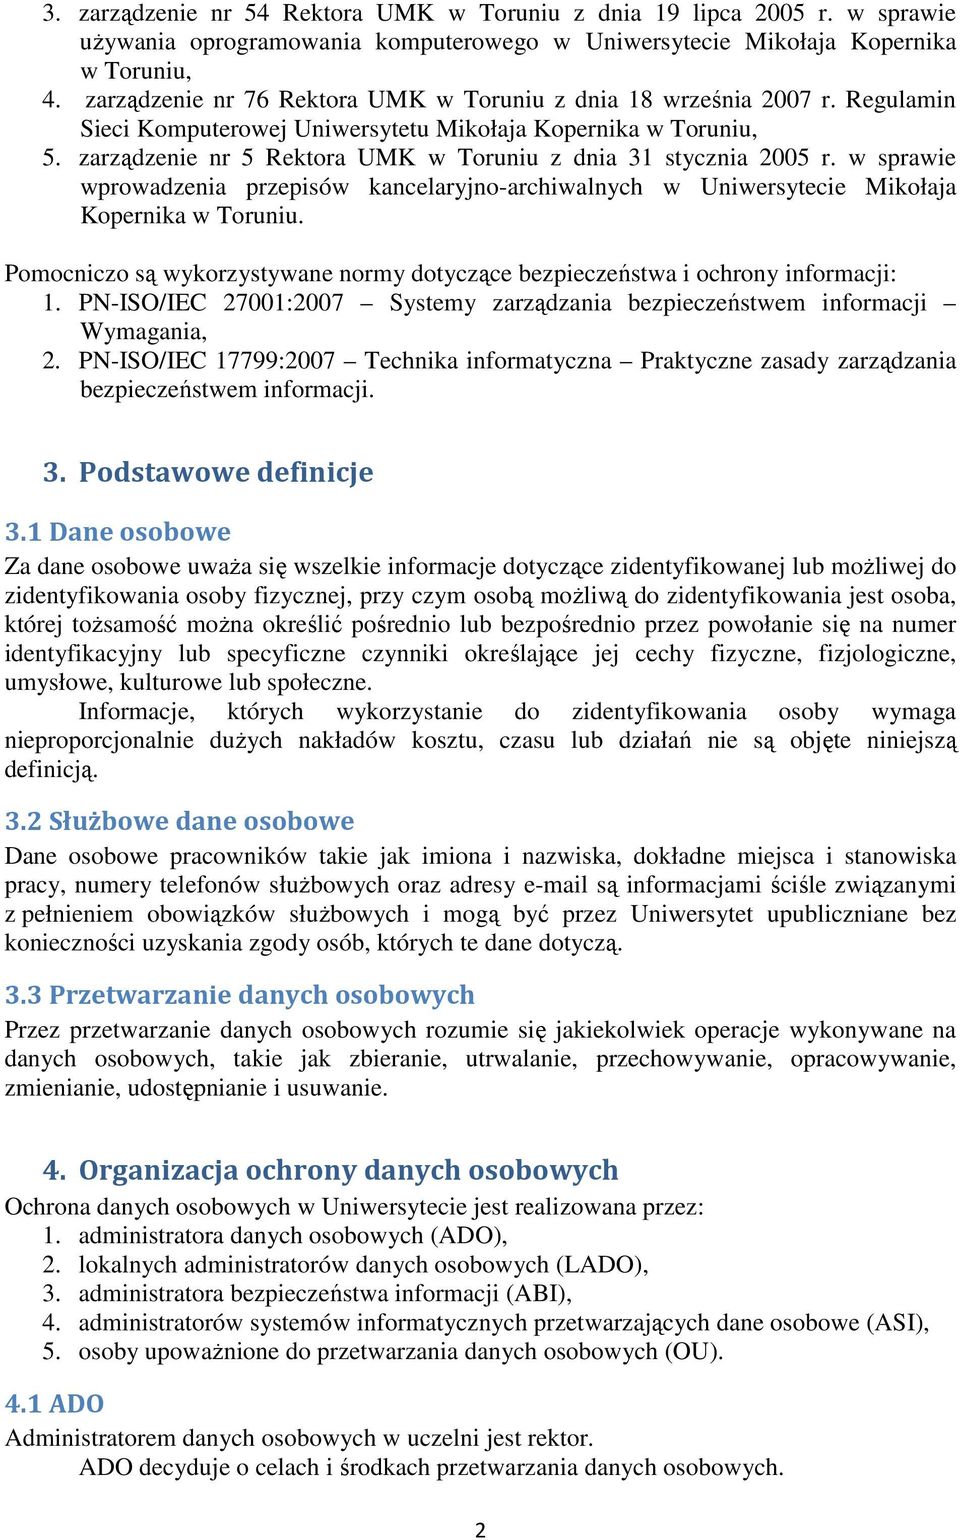 zarządzenie nr 5 Rektora UMK w Toruniu z dnia 31 stycznia 2005 r. w sprawie wprowadzenia przepisów kancelaryjno-archiwalnych w Uniwersytecie Mikołaja Kopernika w Toruniu.